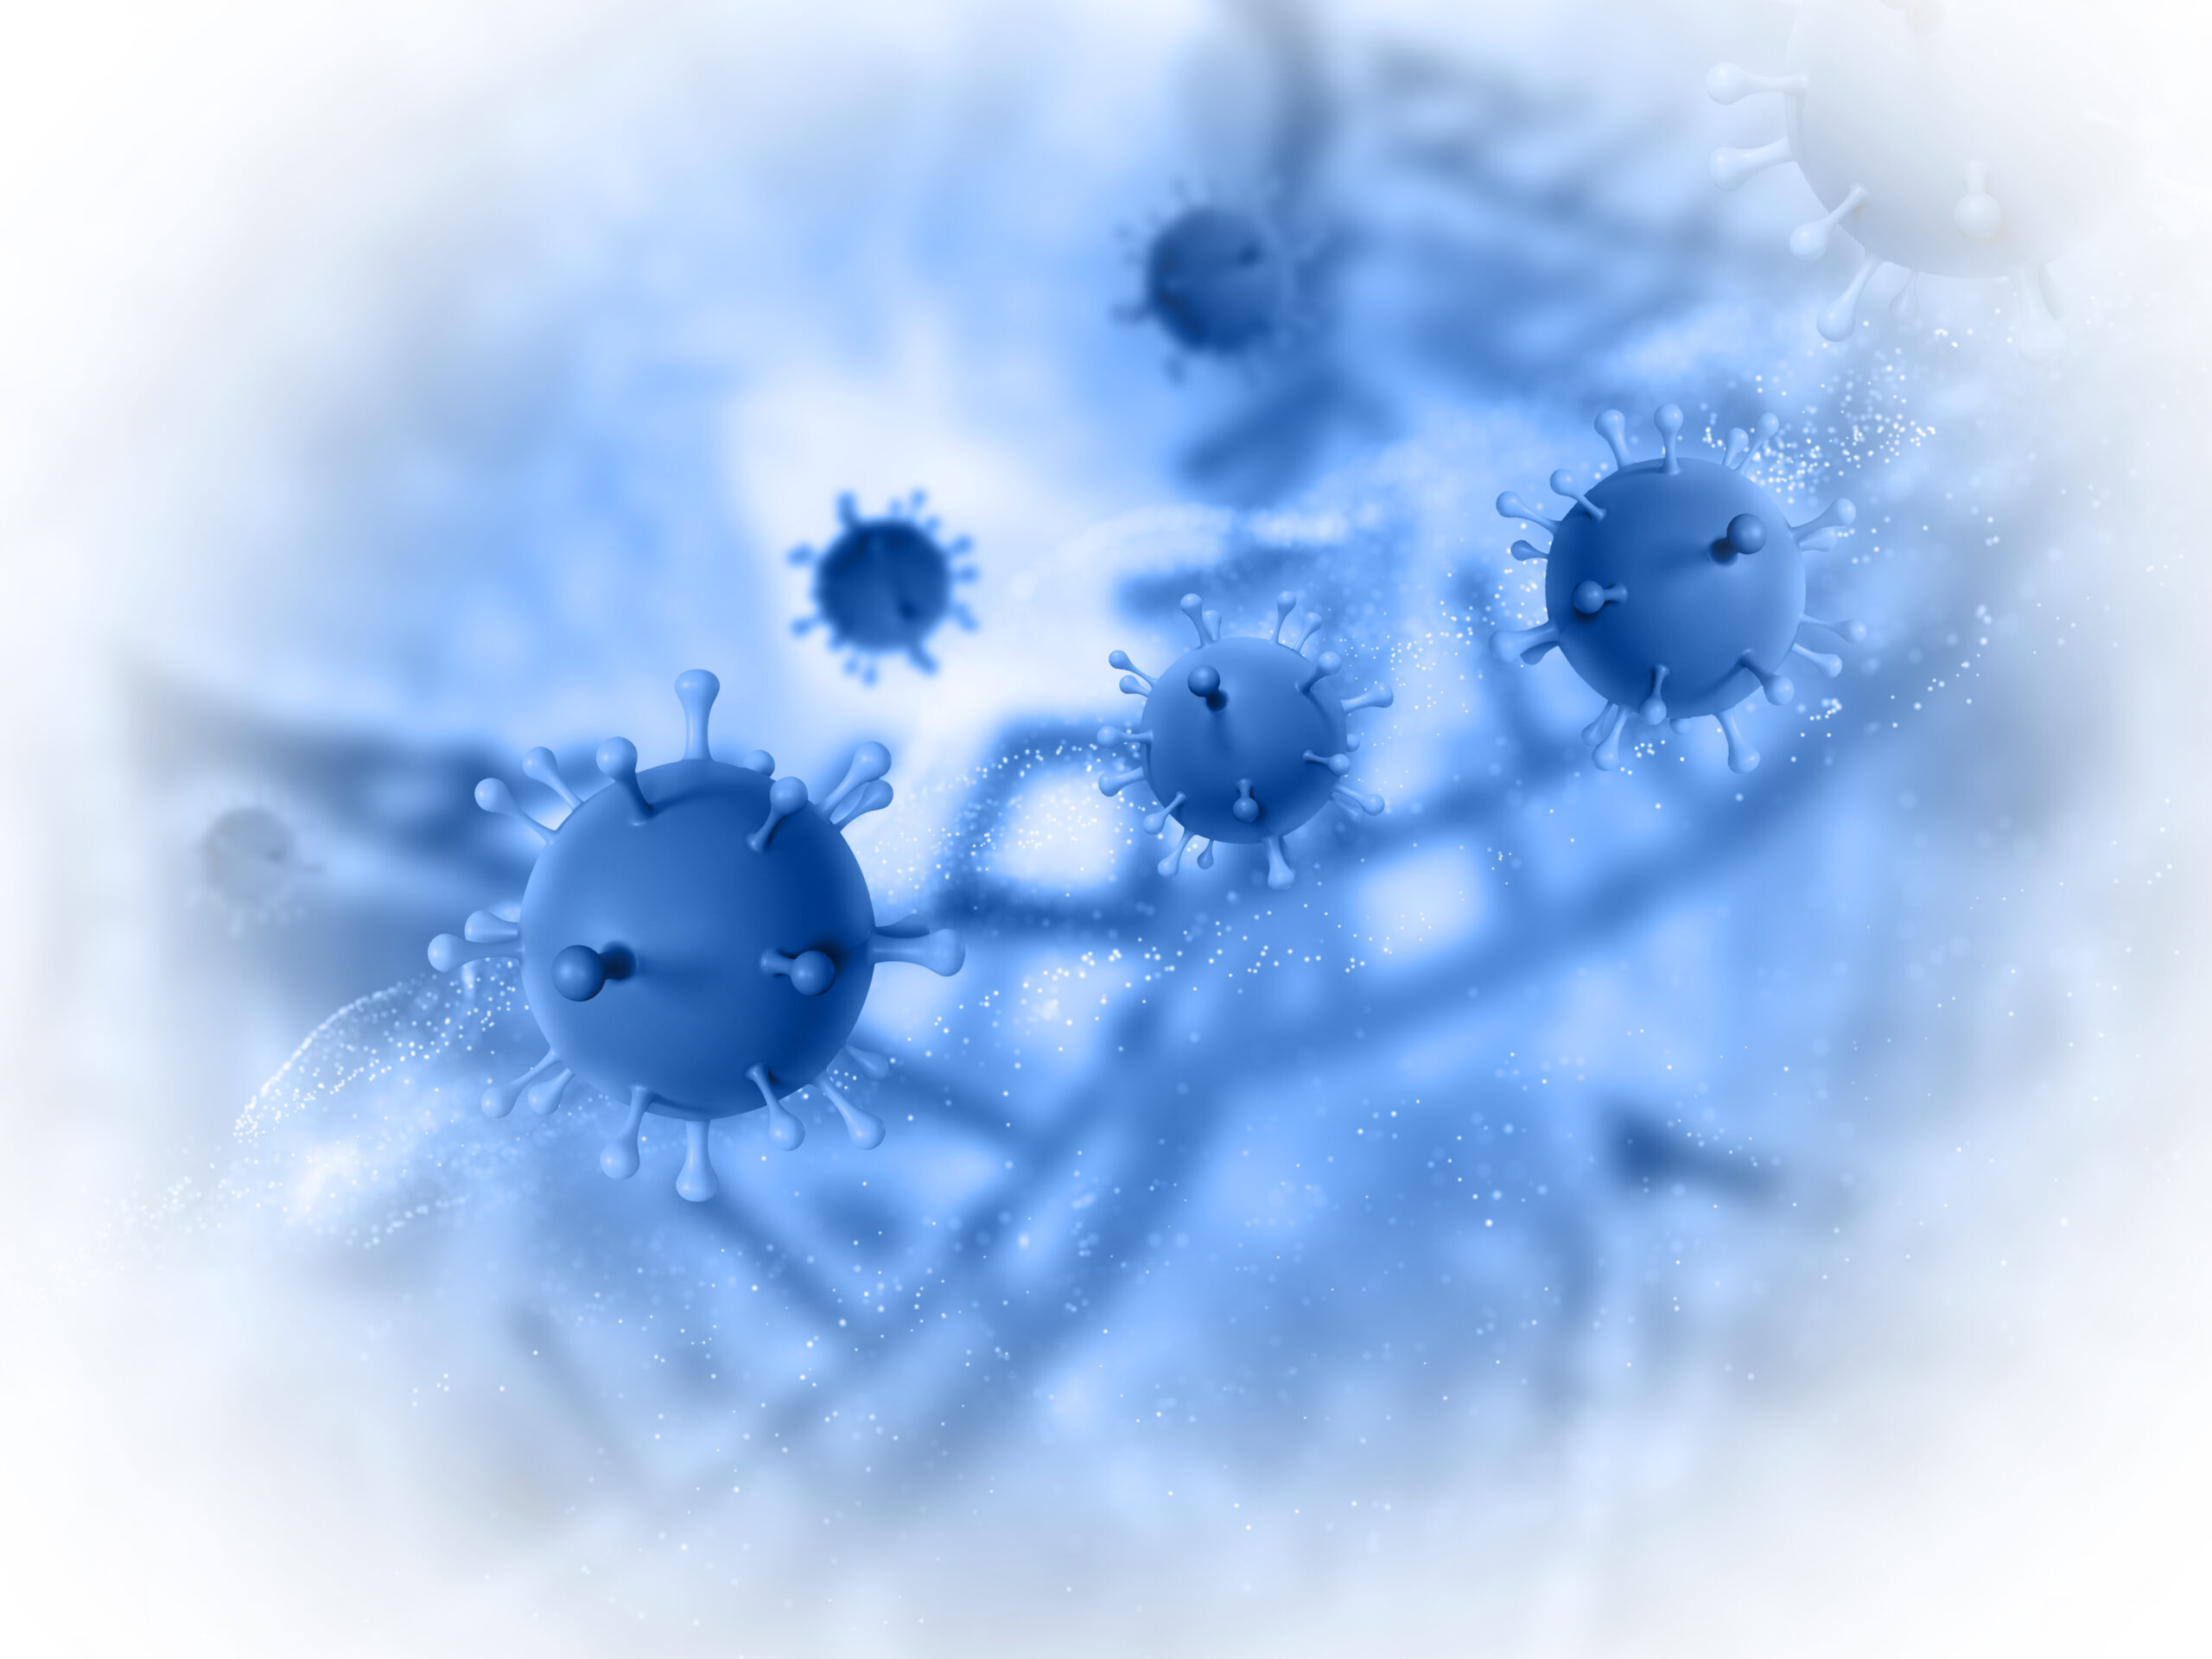 Origen del coronavirus: 4 hallazgos y 3 incógnitas que deja el informe de la OMS tras la investigación en China